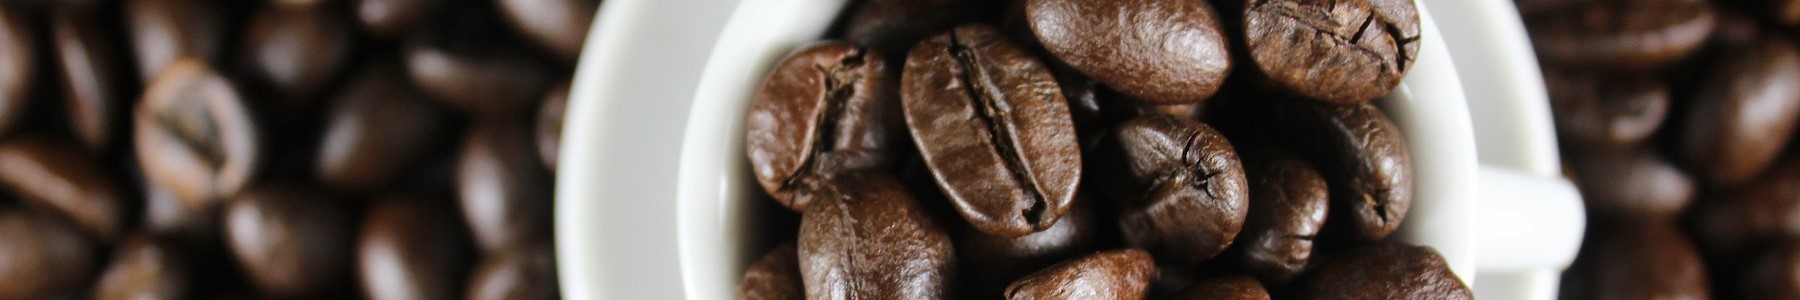 Comprar café Descafeinado Natural | Ledma Café y Té